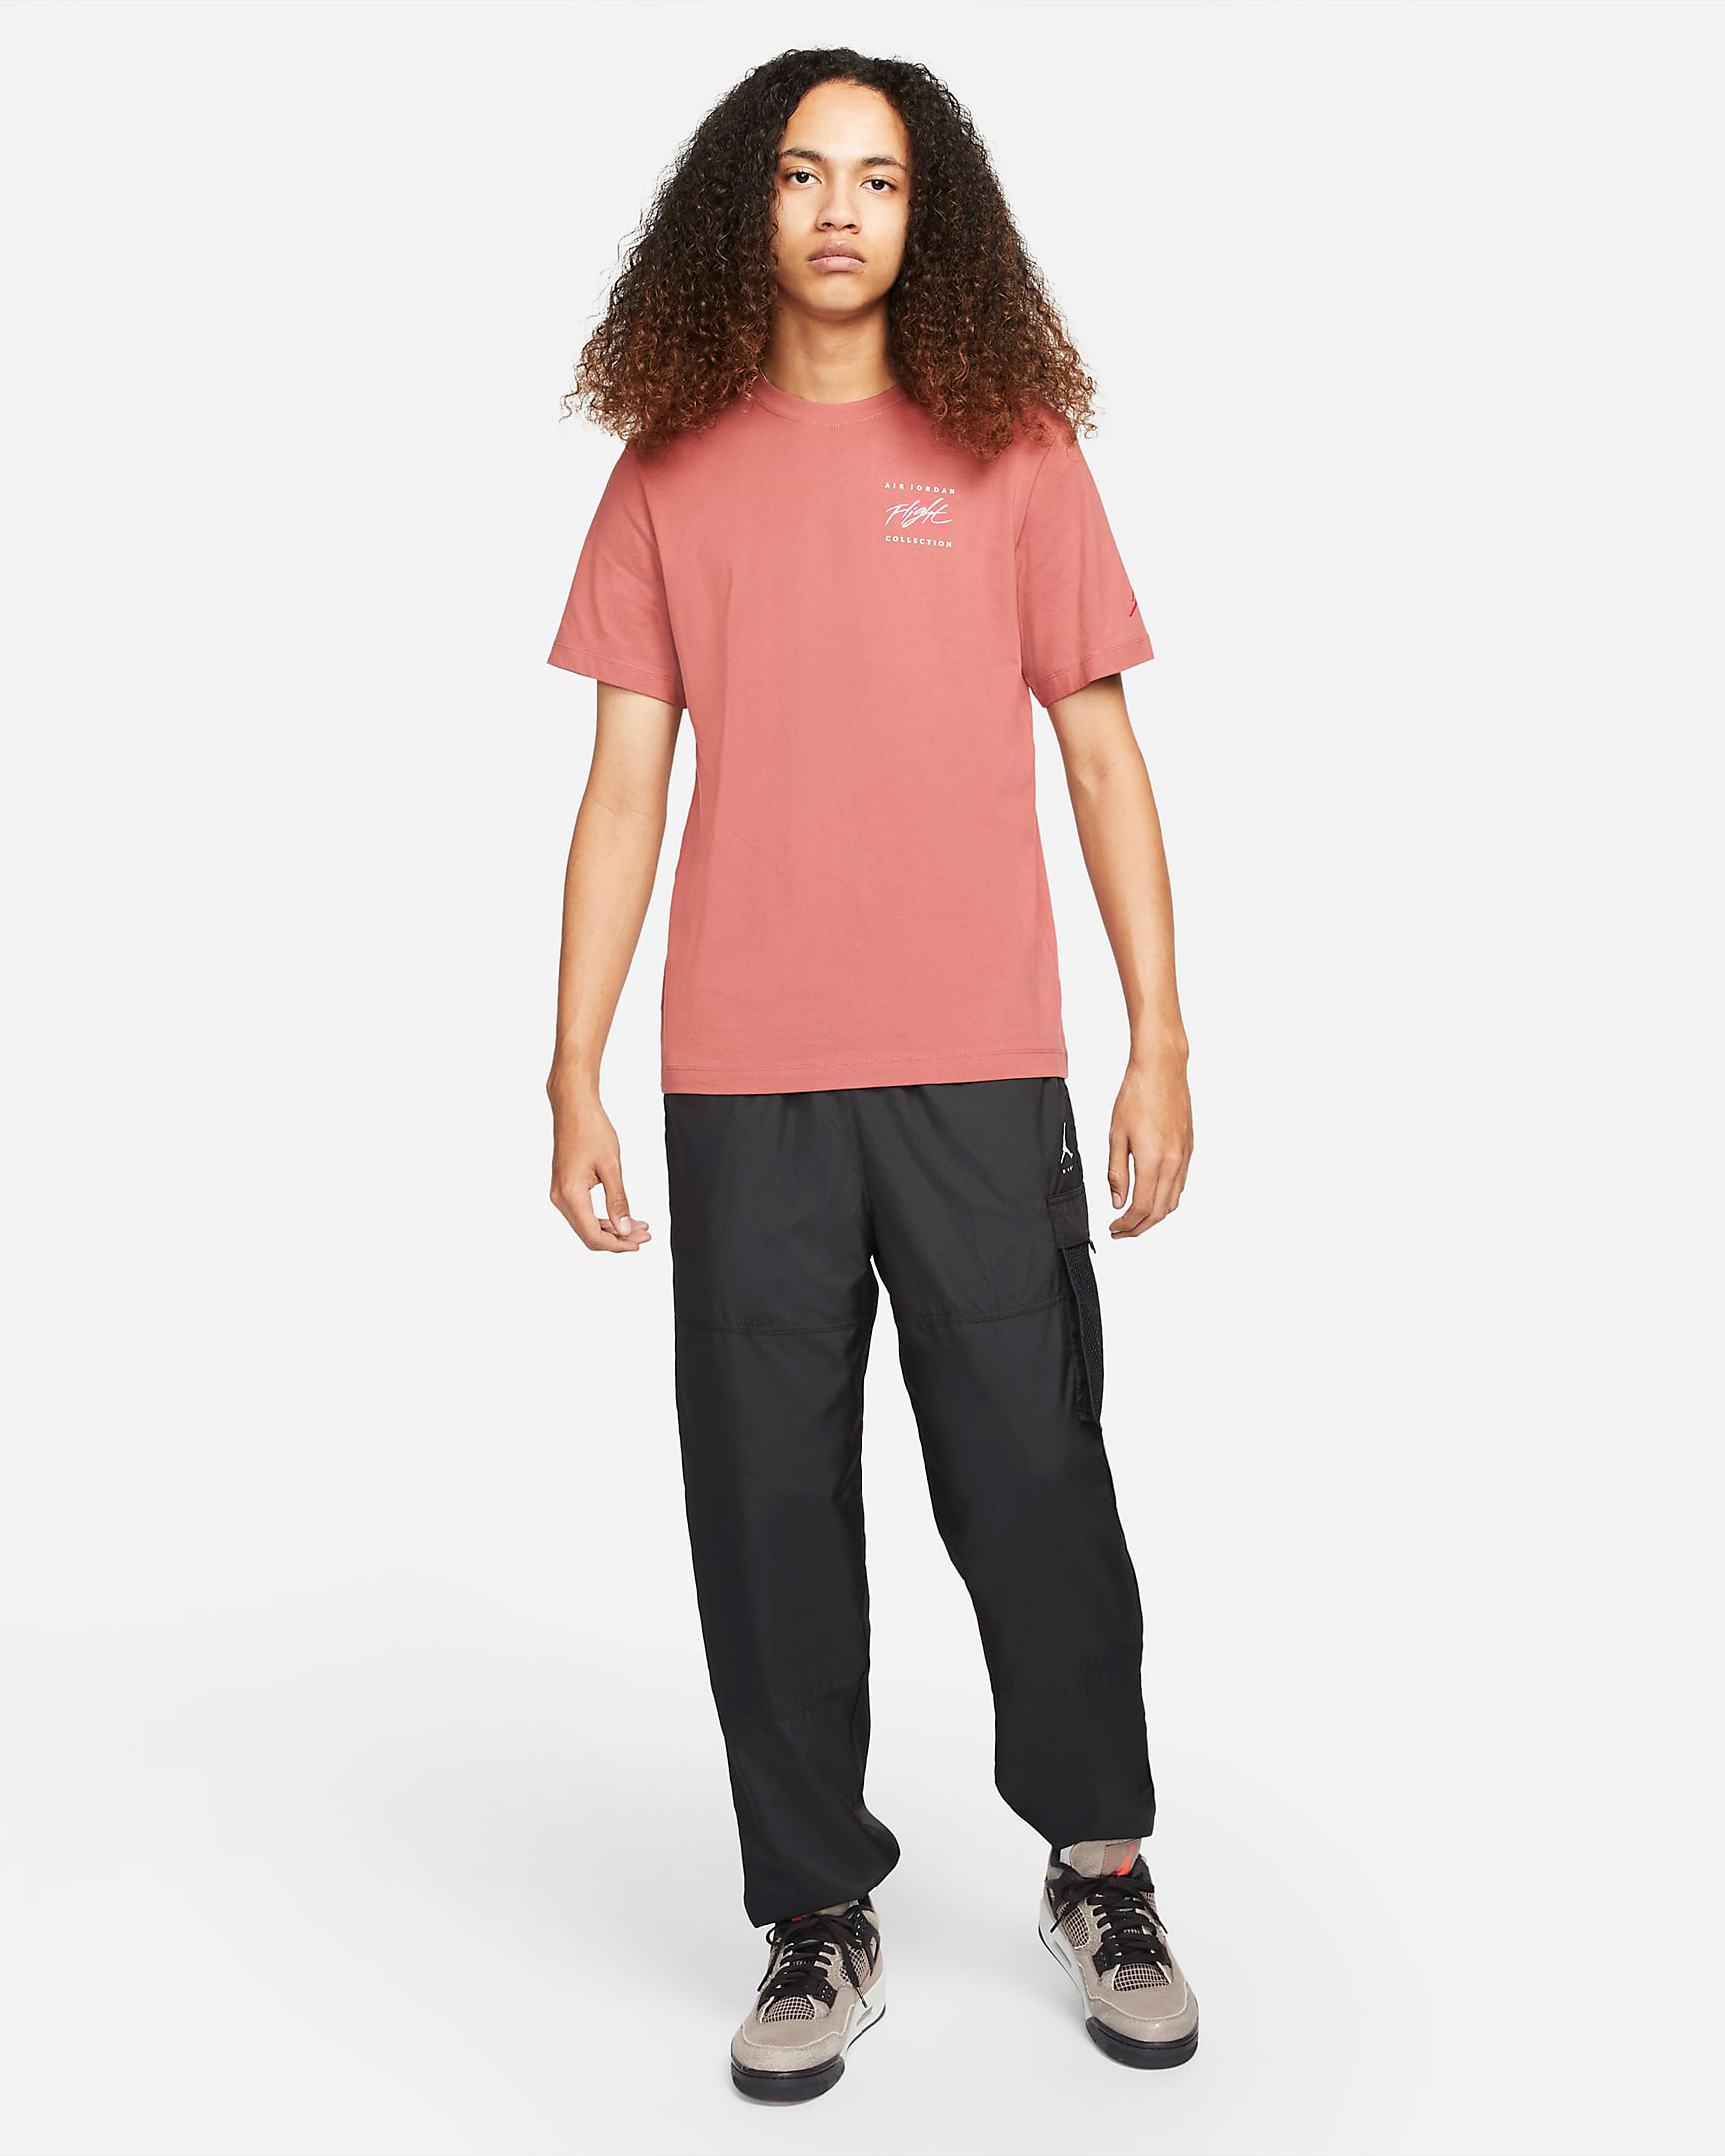 jordan-flight-essentials-t-shirt-canyon-rust-mystic-hibiscus